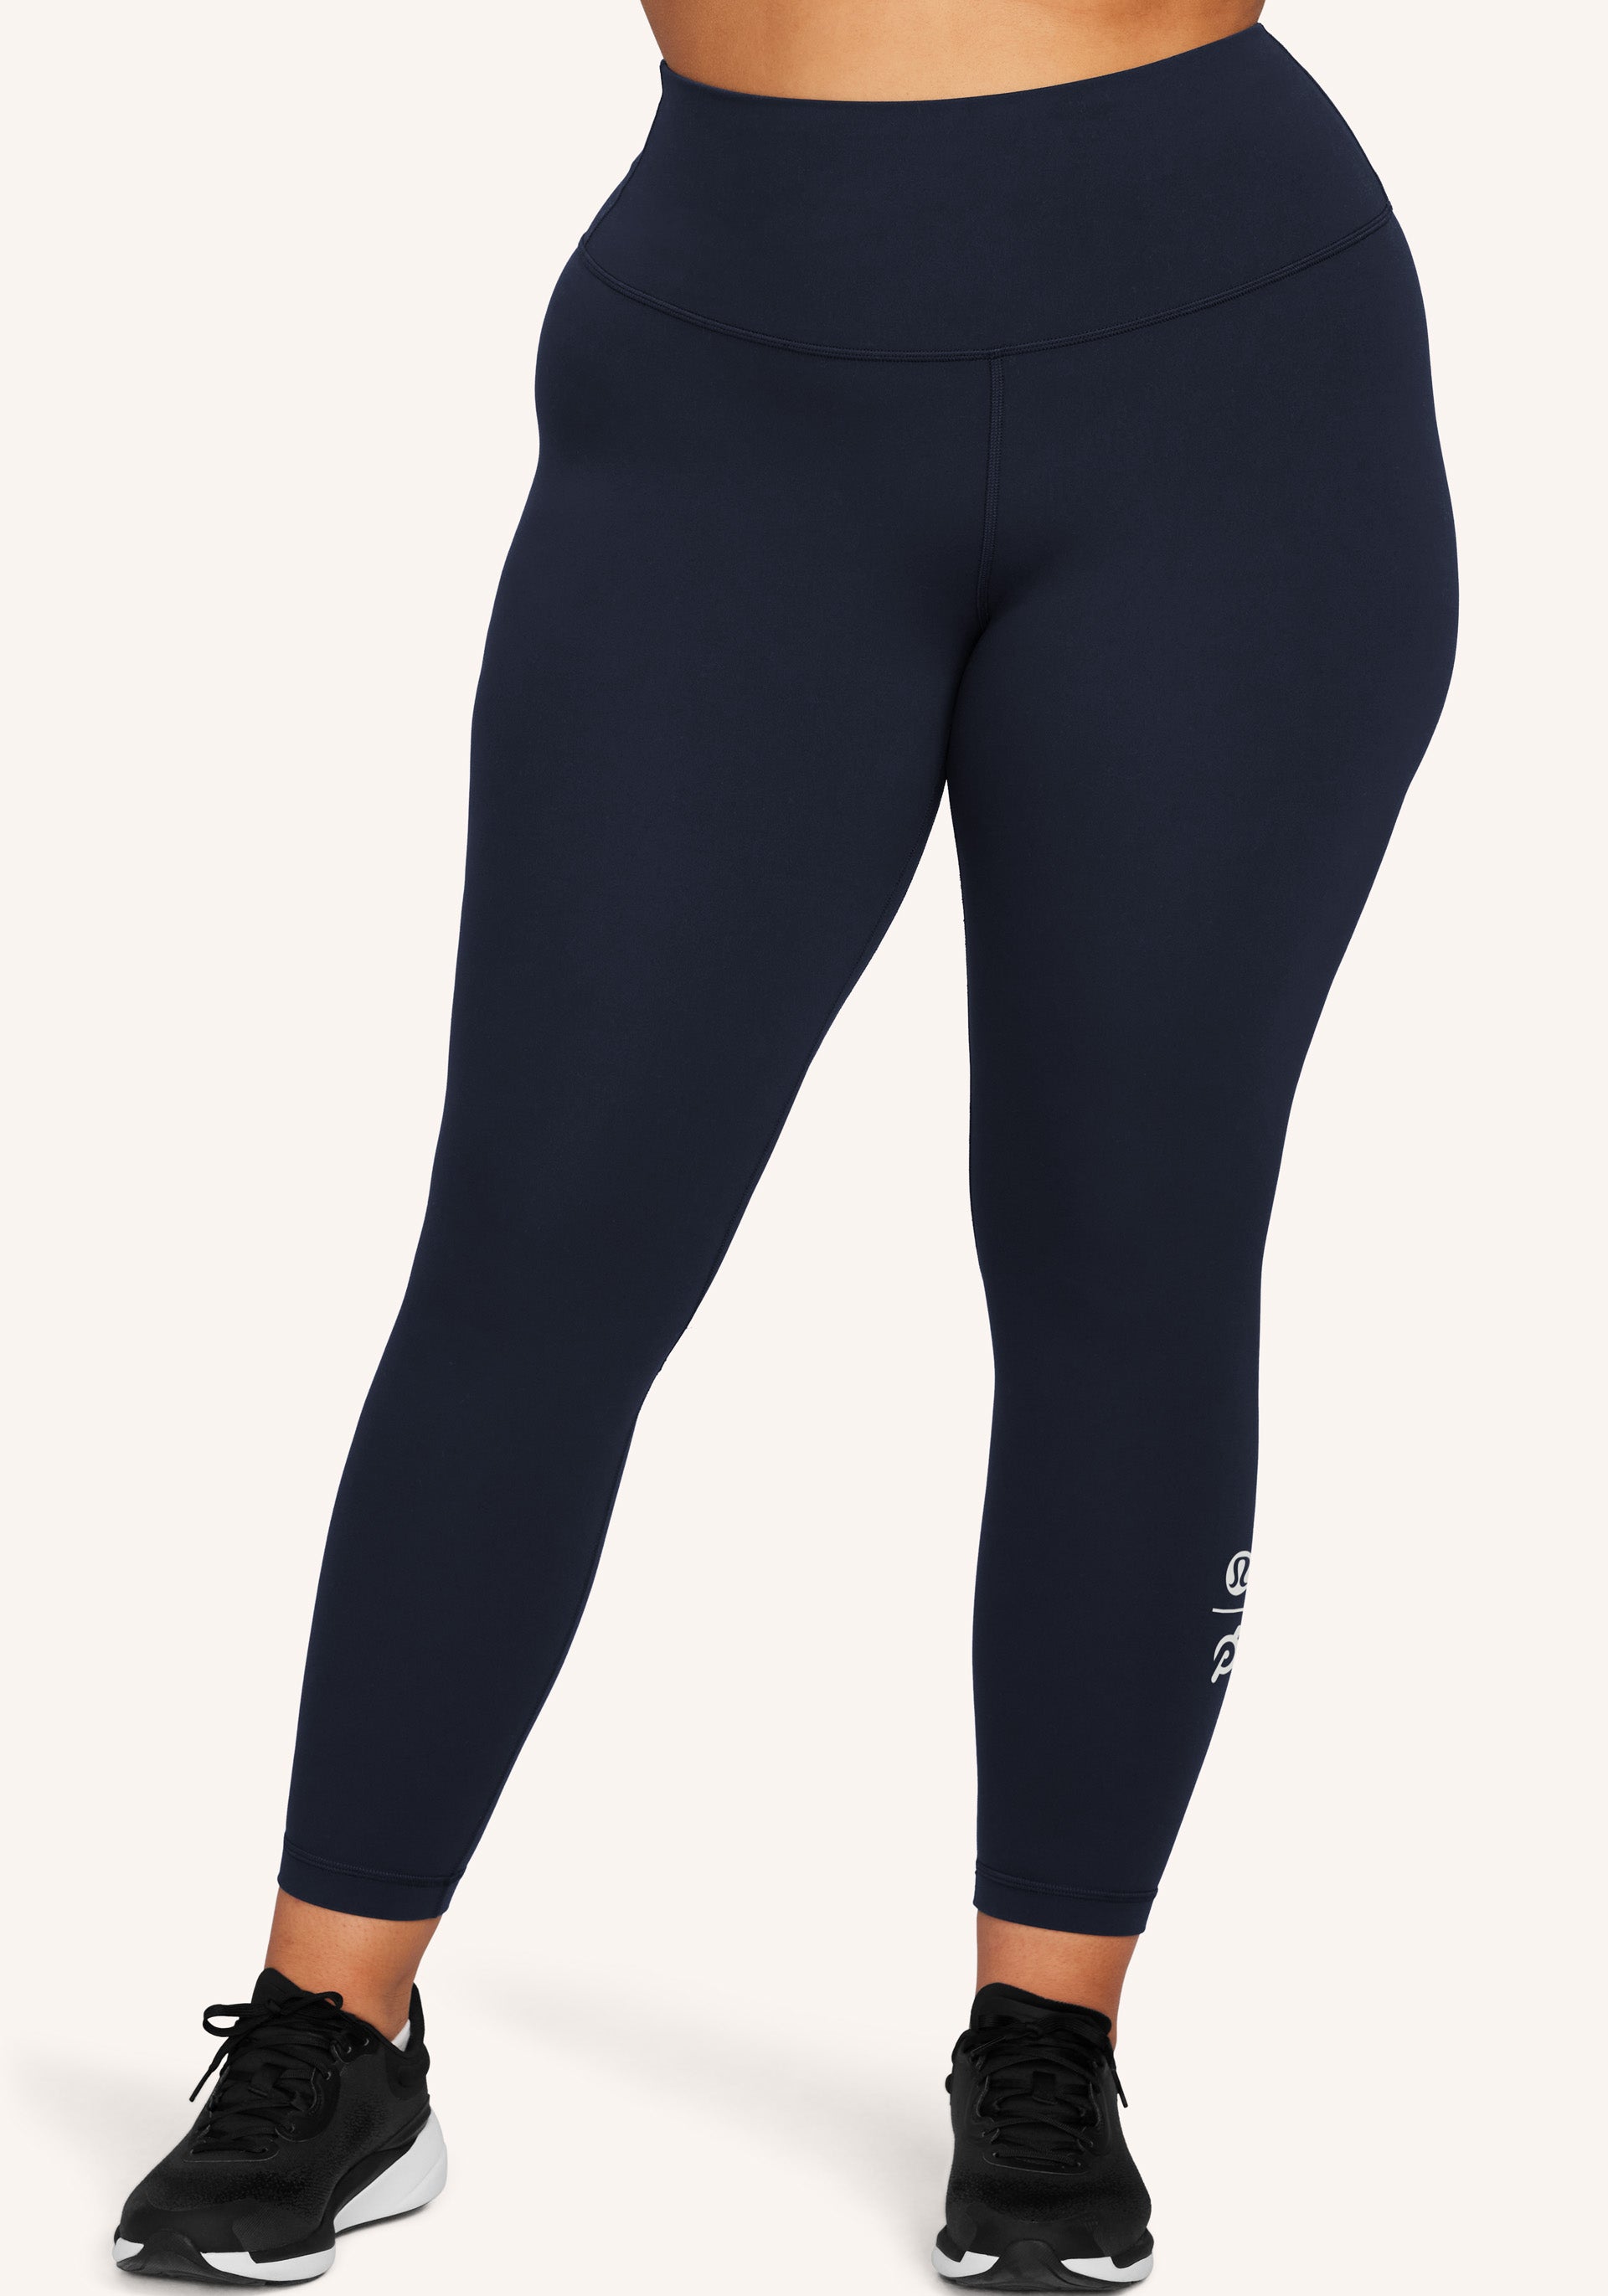 Lululemon insight pant leggings size 2 - $64 - From Michaela